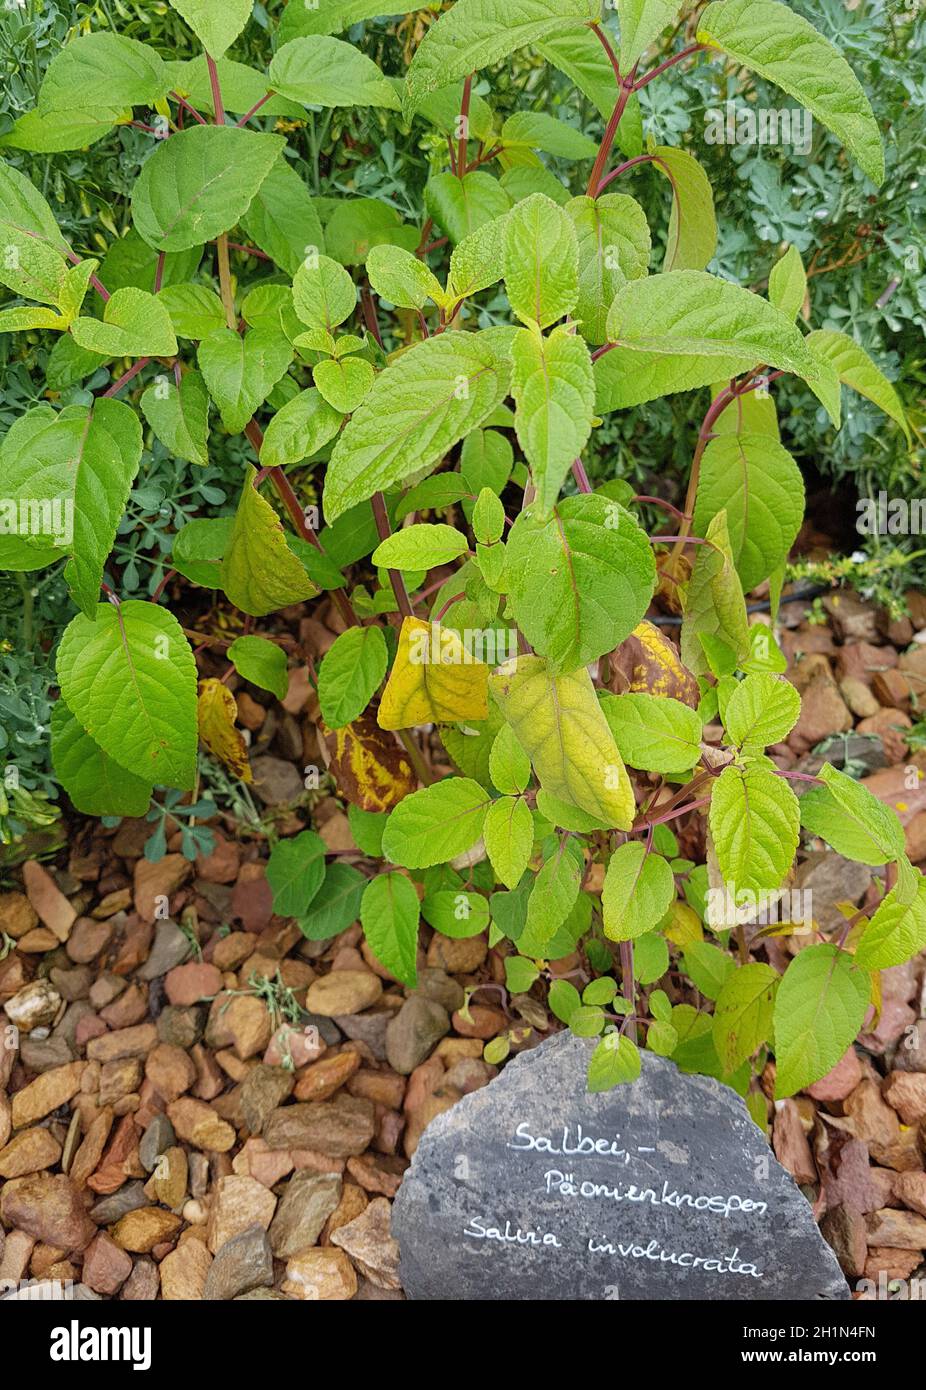 Salbei, Paeonienknospen, Salvia involucrata, ist eine wichtige Heilpflanze und eine Duftpflanze mit blauen Blueten. Sie ist eine schoene Staude und wi Stock Photo